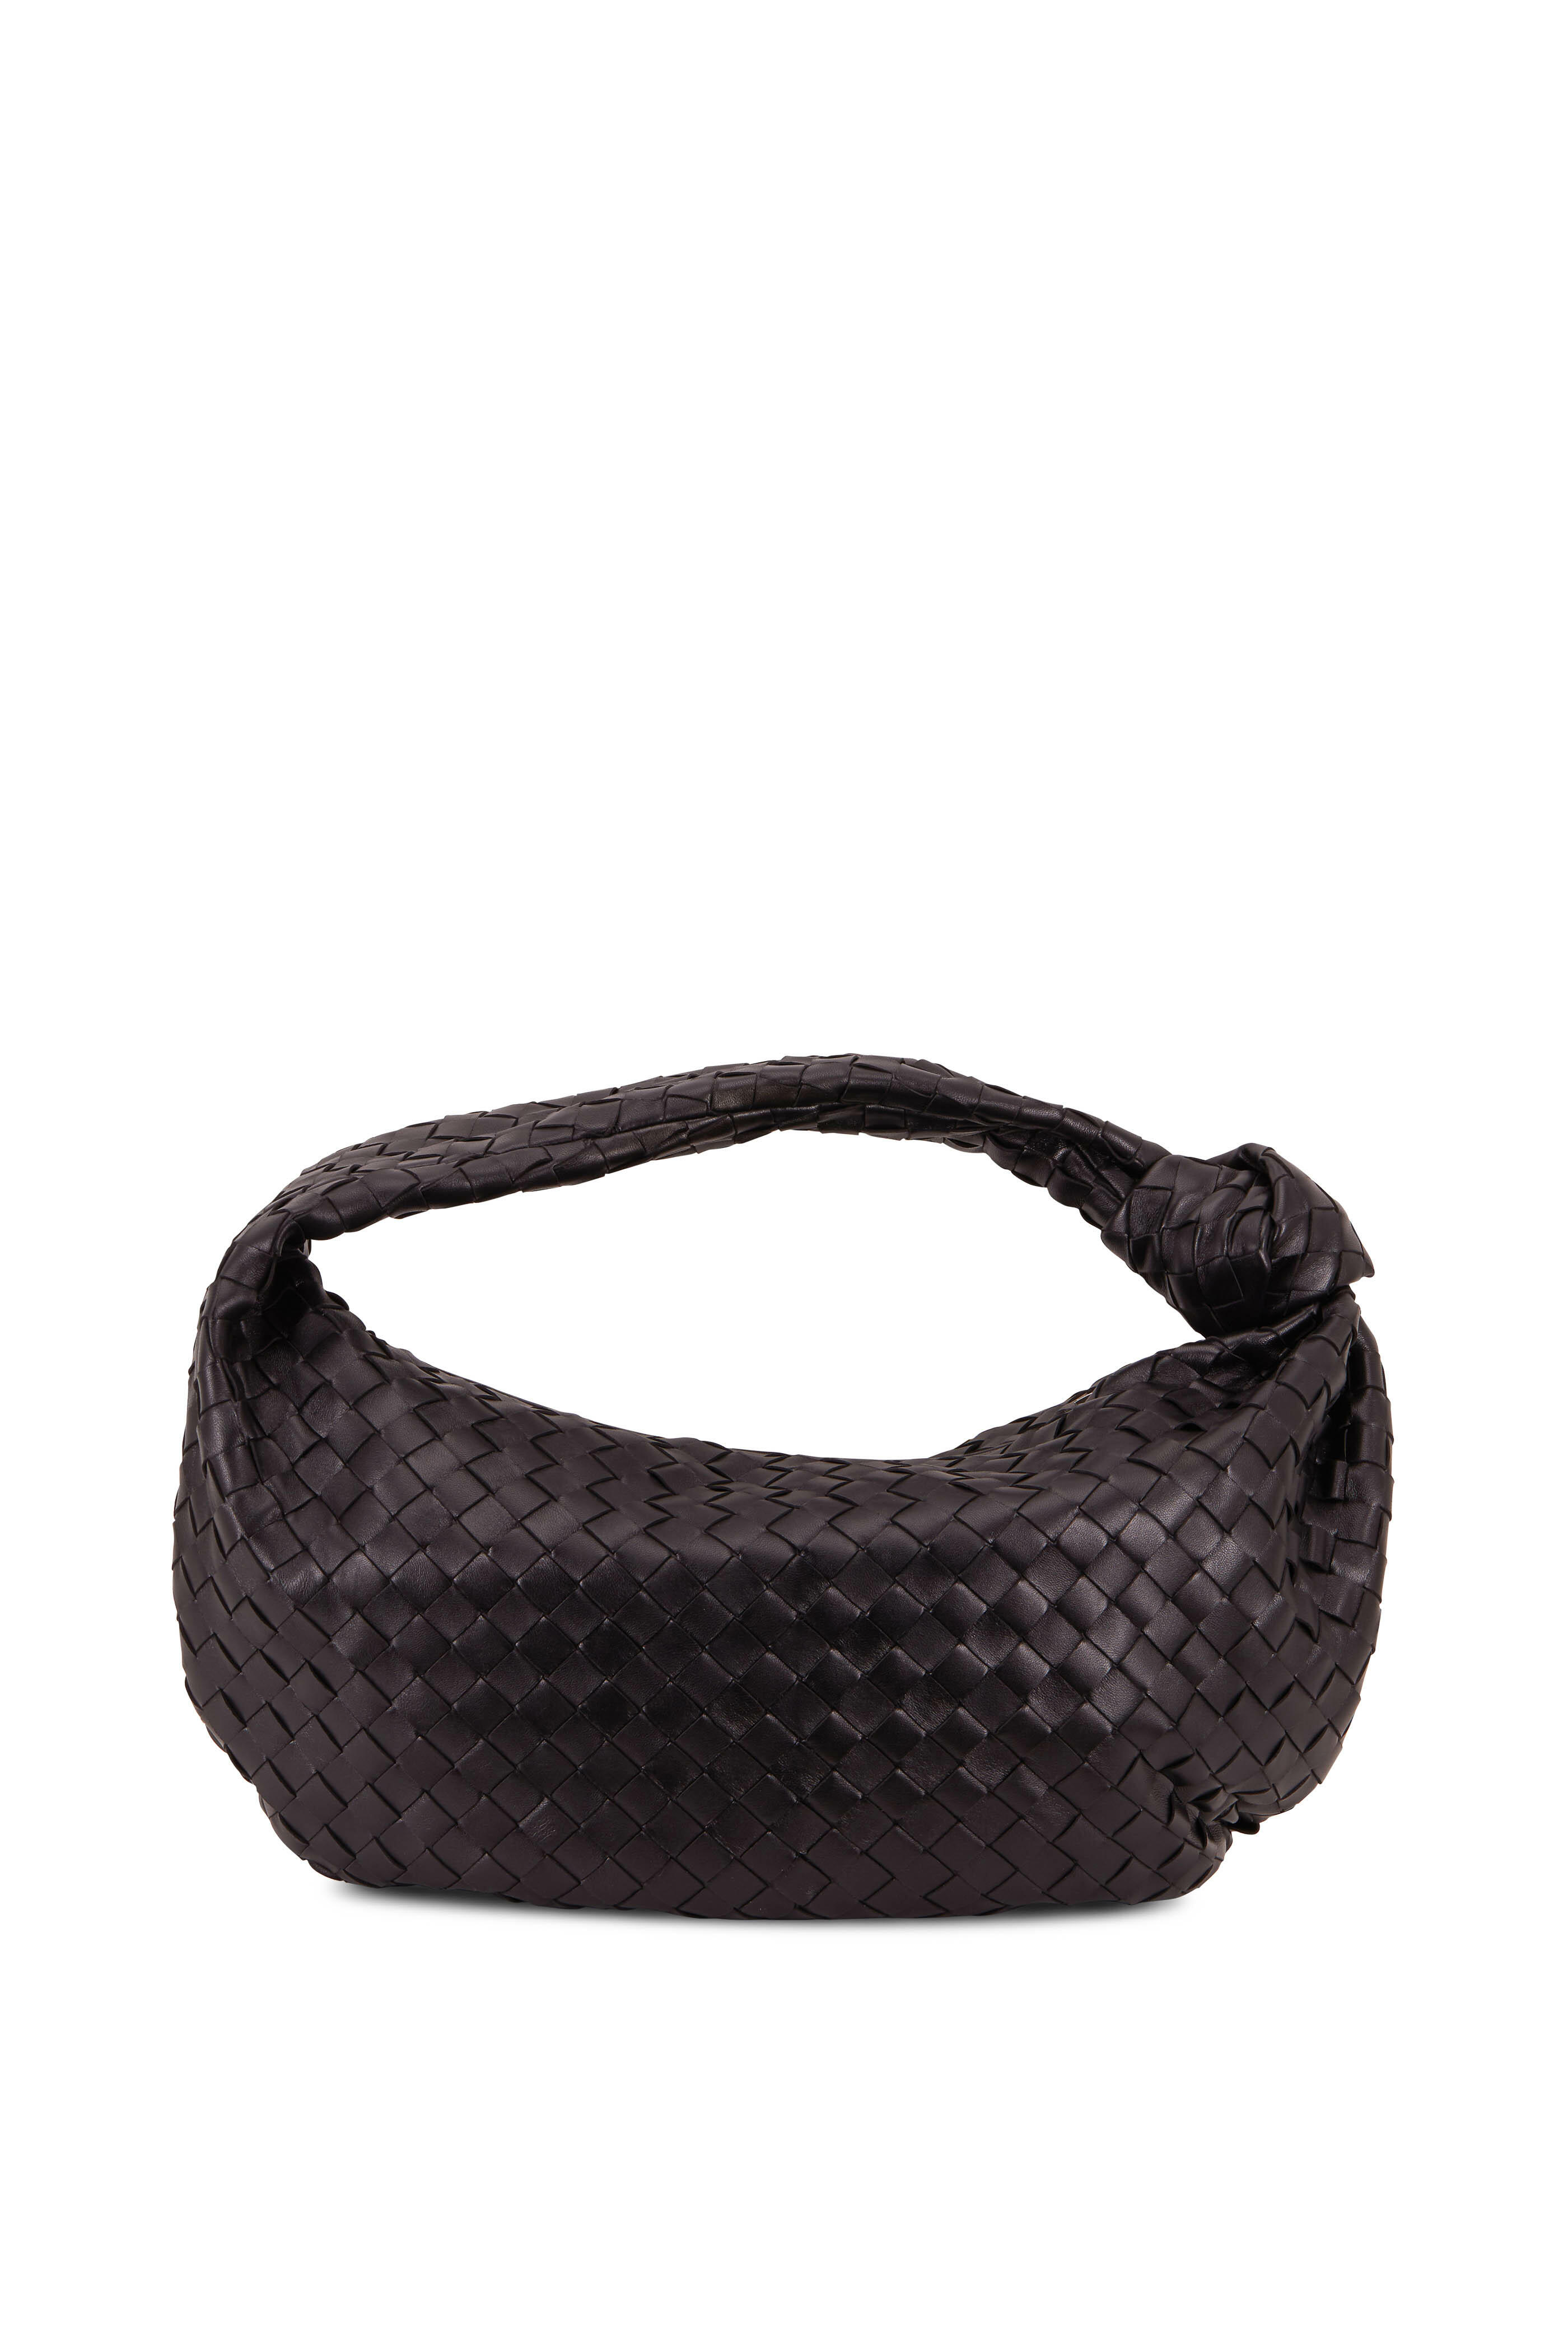 Bottega Veneta Jodie Intrecciato Mini Studded Leather Hobo Bag